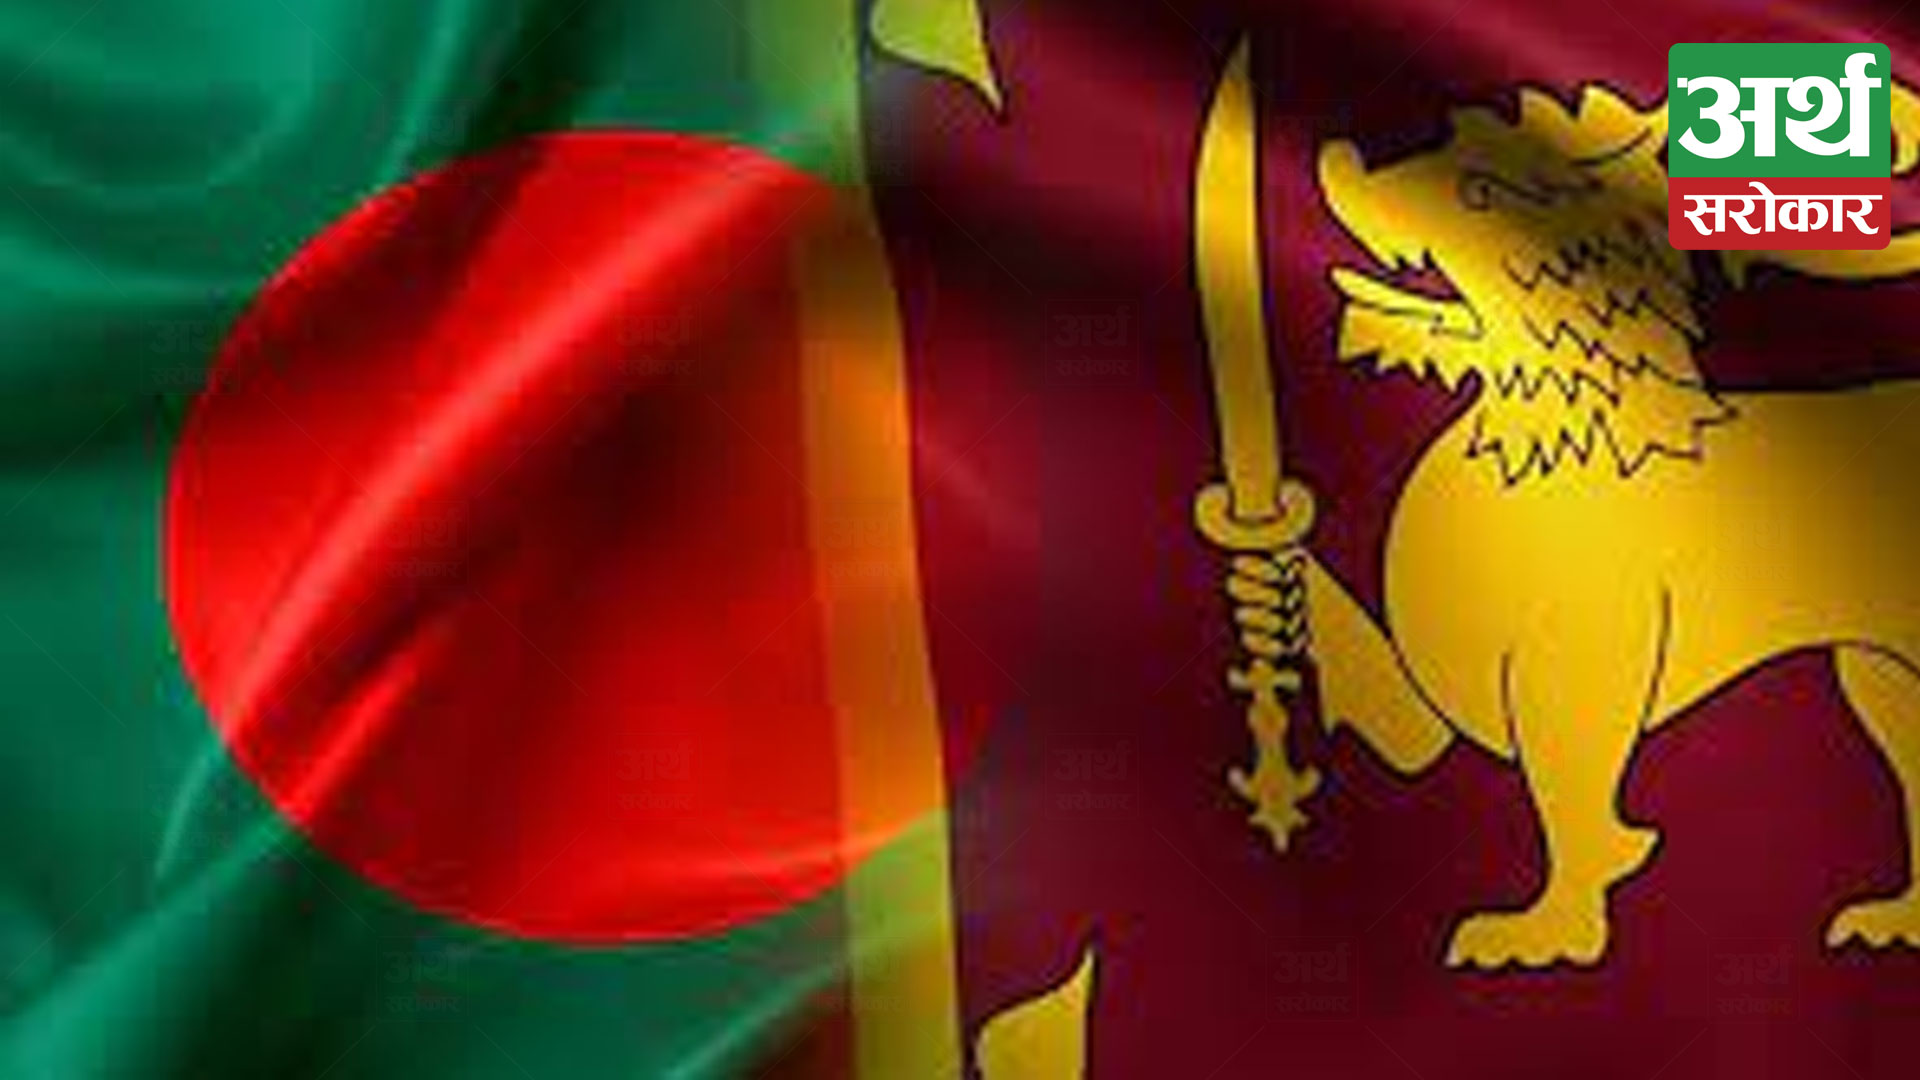 Now Bangladesh’s potato aid Sri Lanka: Bangladesh’s standing with a crisis hit nation